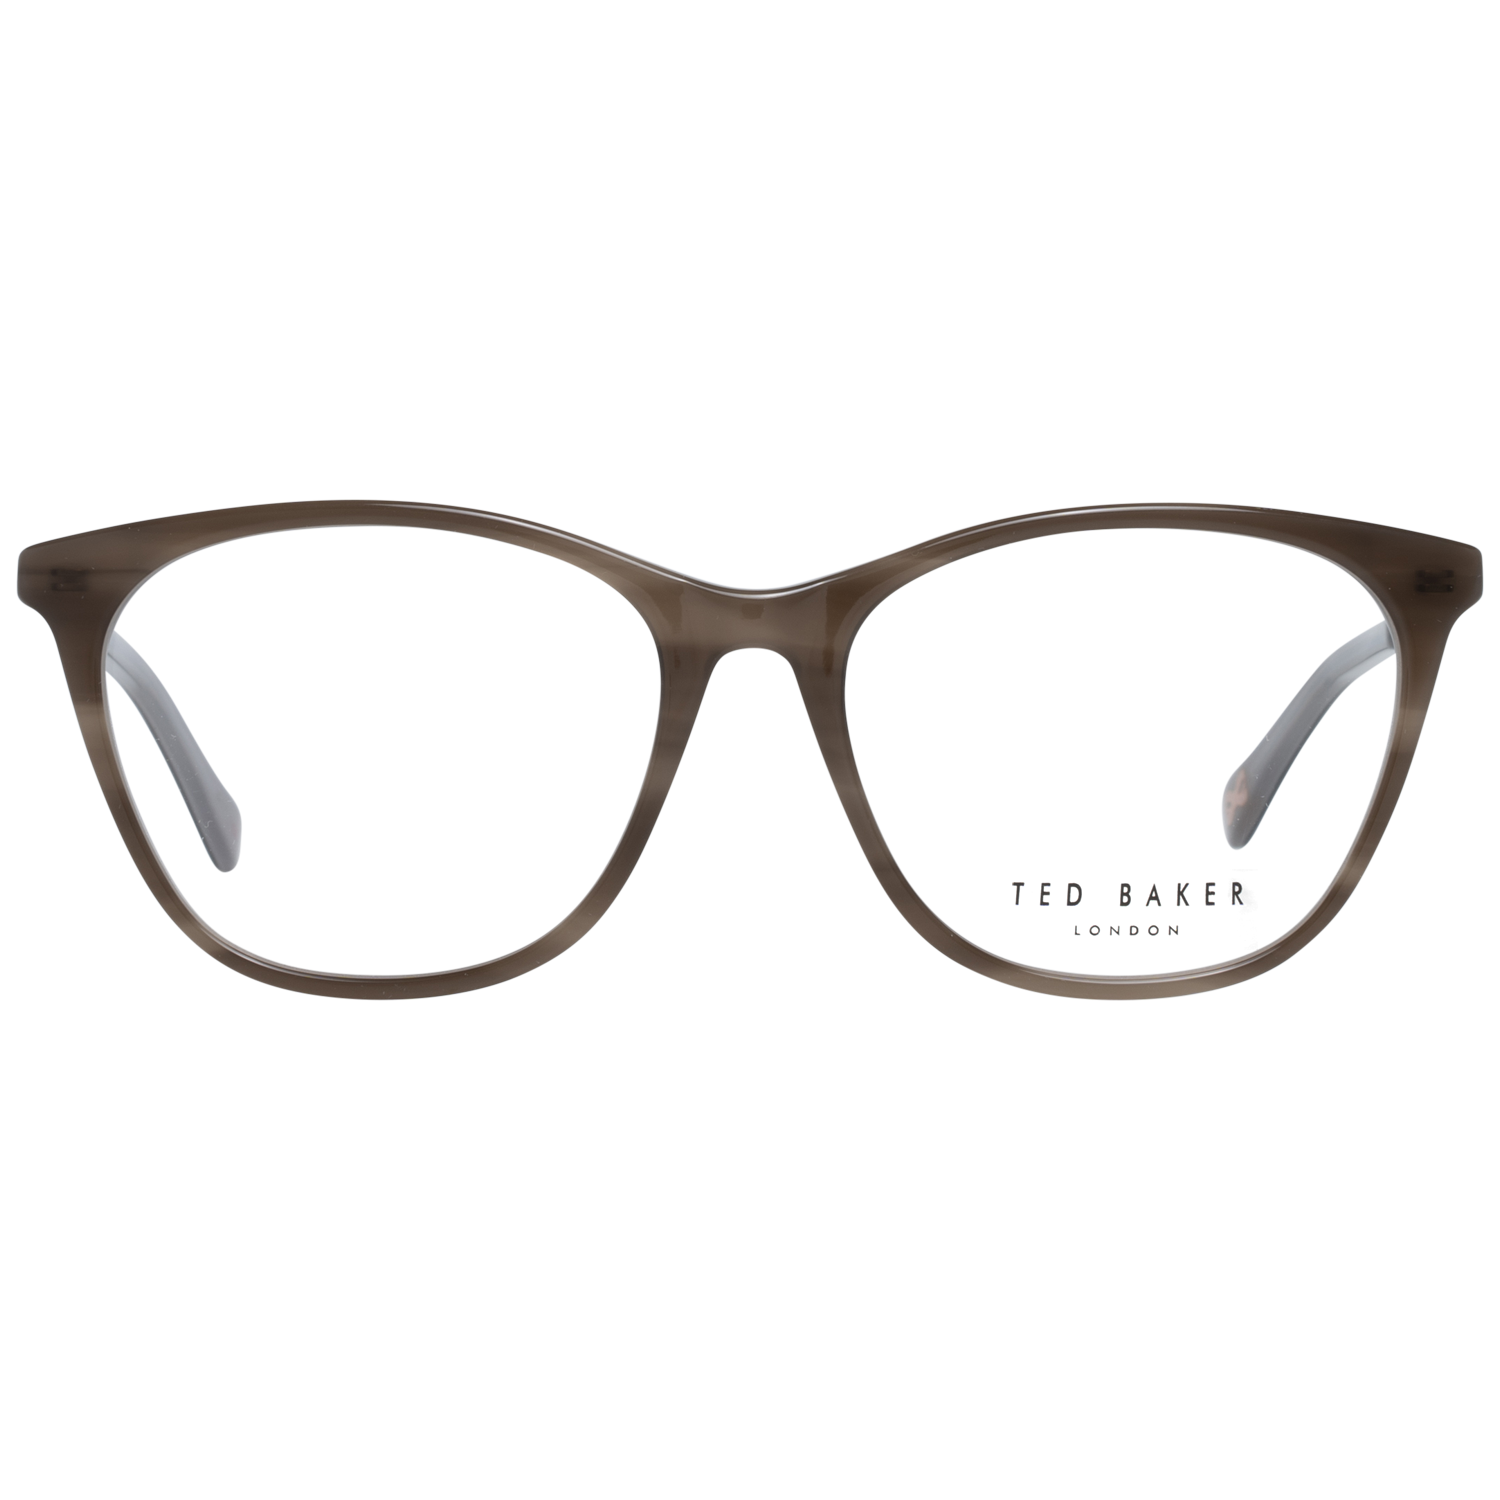 Ted Baker Frames Ted Baker Optical Frame Prescription Glasses TB9184 952 53 Rayna Eyeglasses Eyewear UK USA Australia 